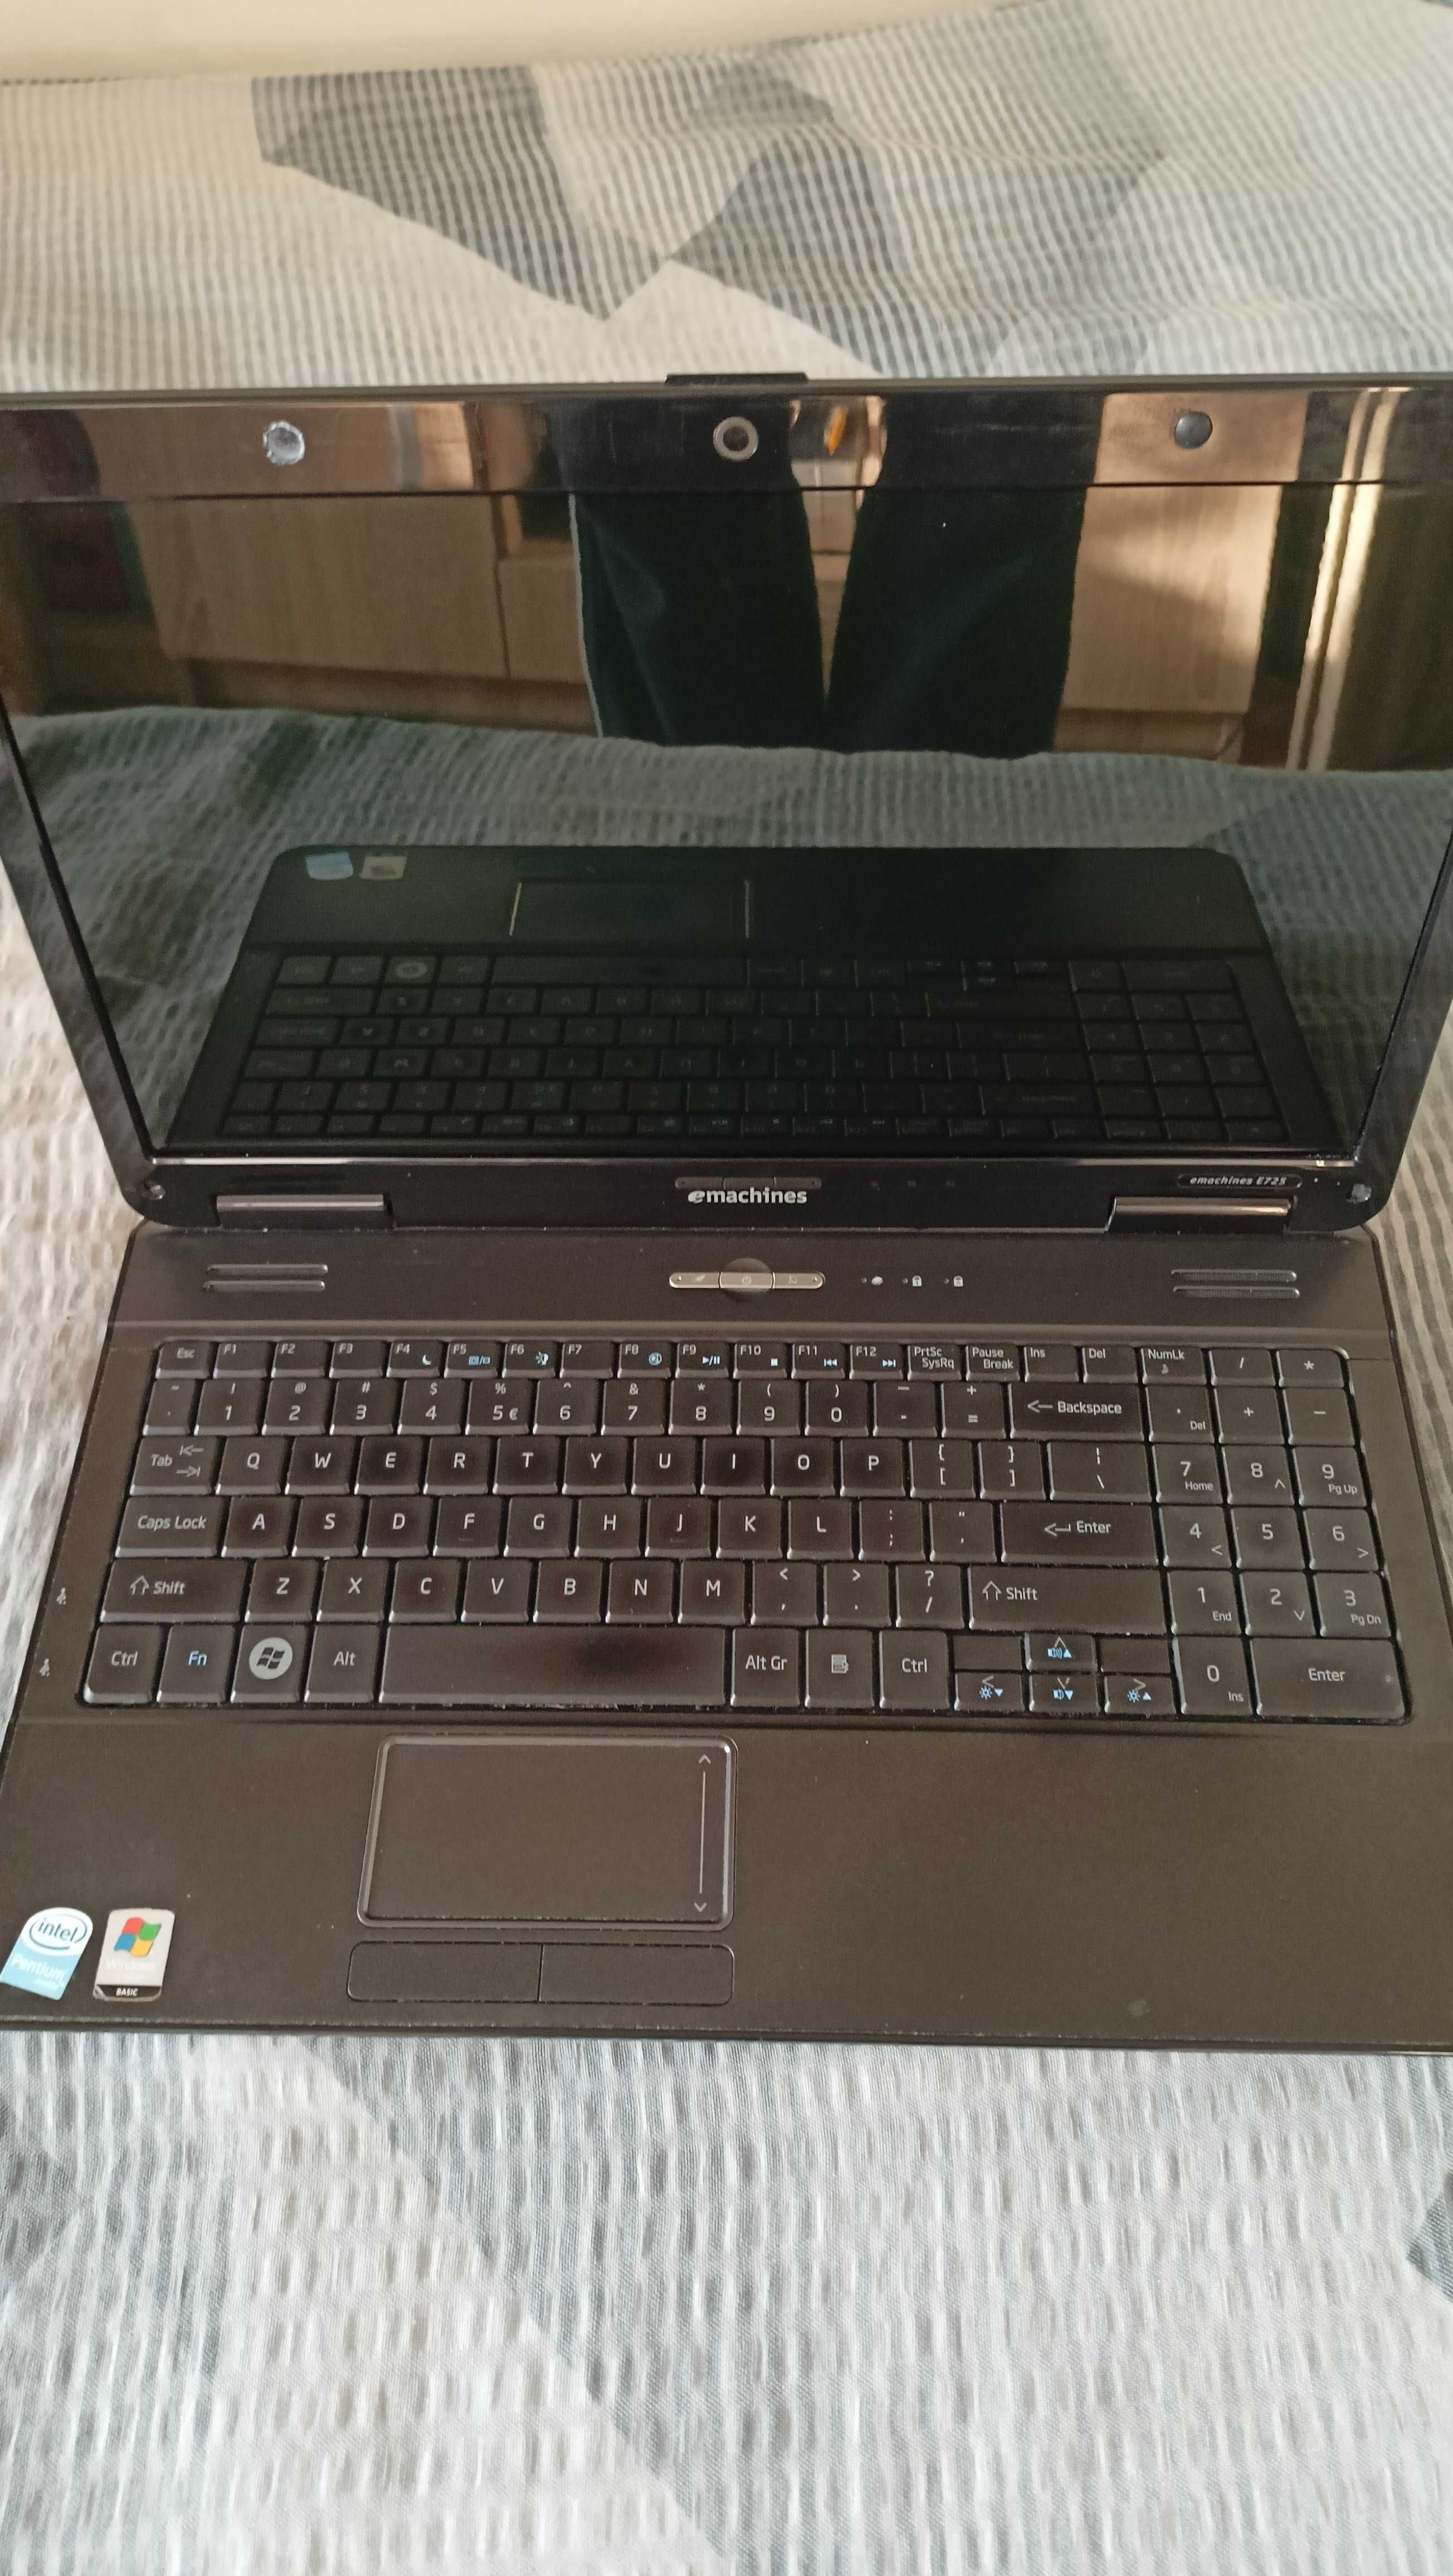 Laptop Acer Emachines E725 używany sprawny